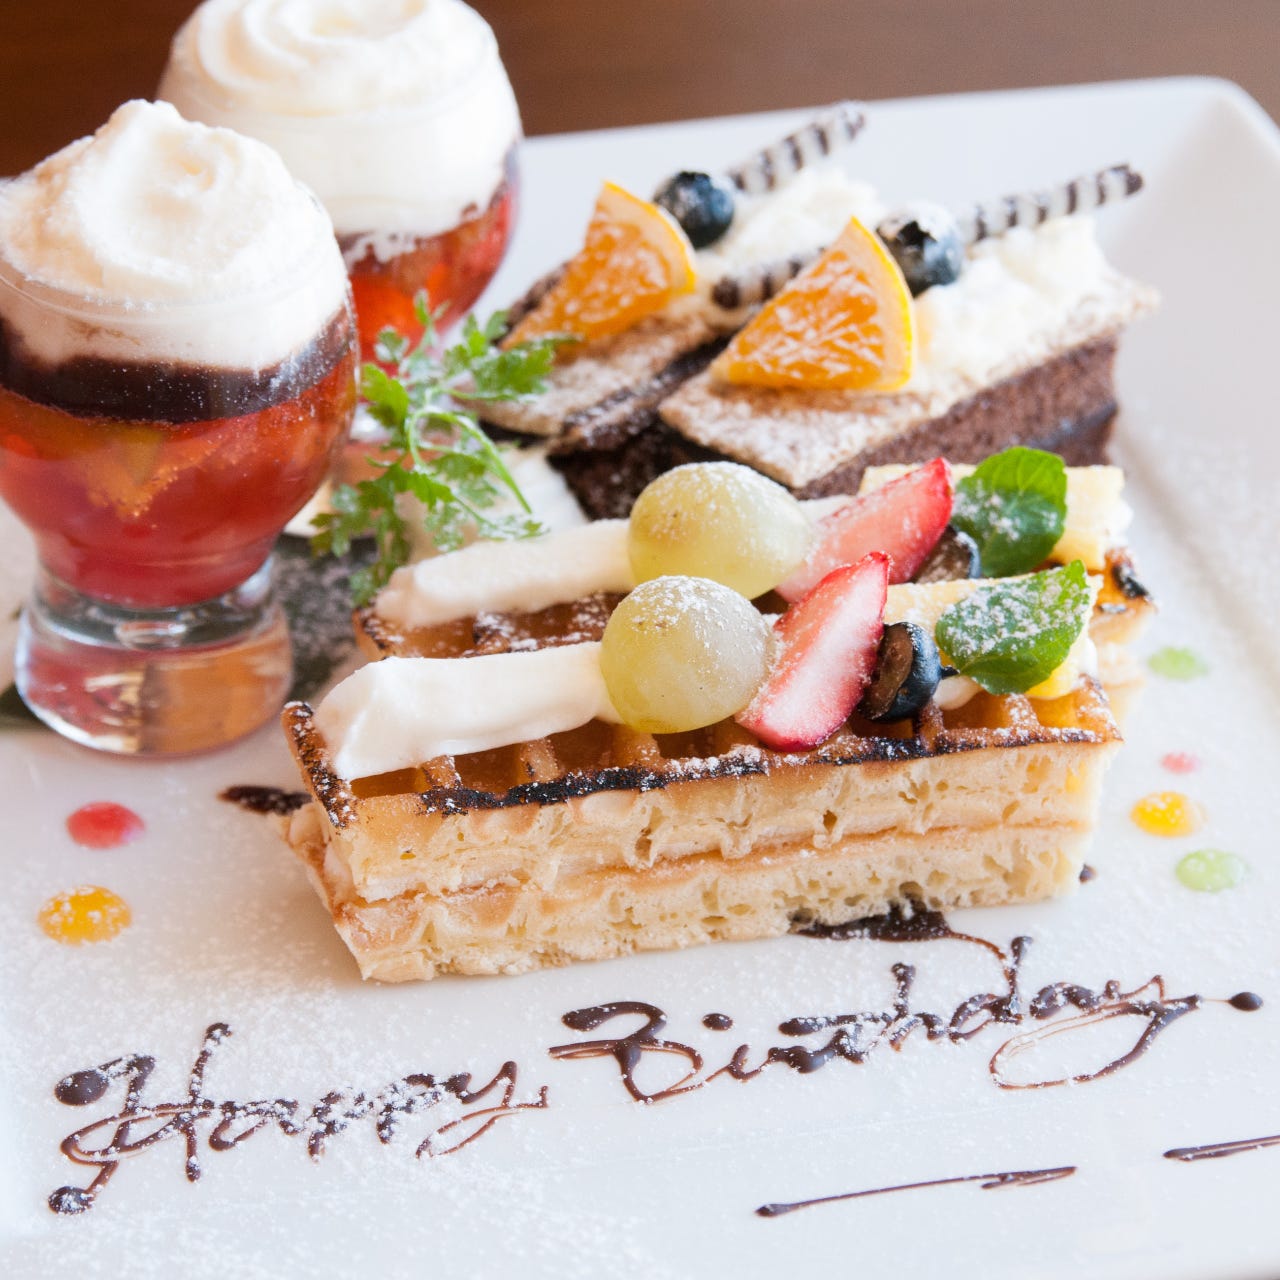 21年 最新グルメ 神奈川 誕生日サプライズがあるお店 レストラン カフェ 居酒屋のネット予約 神奈川版